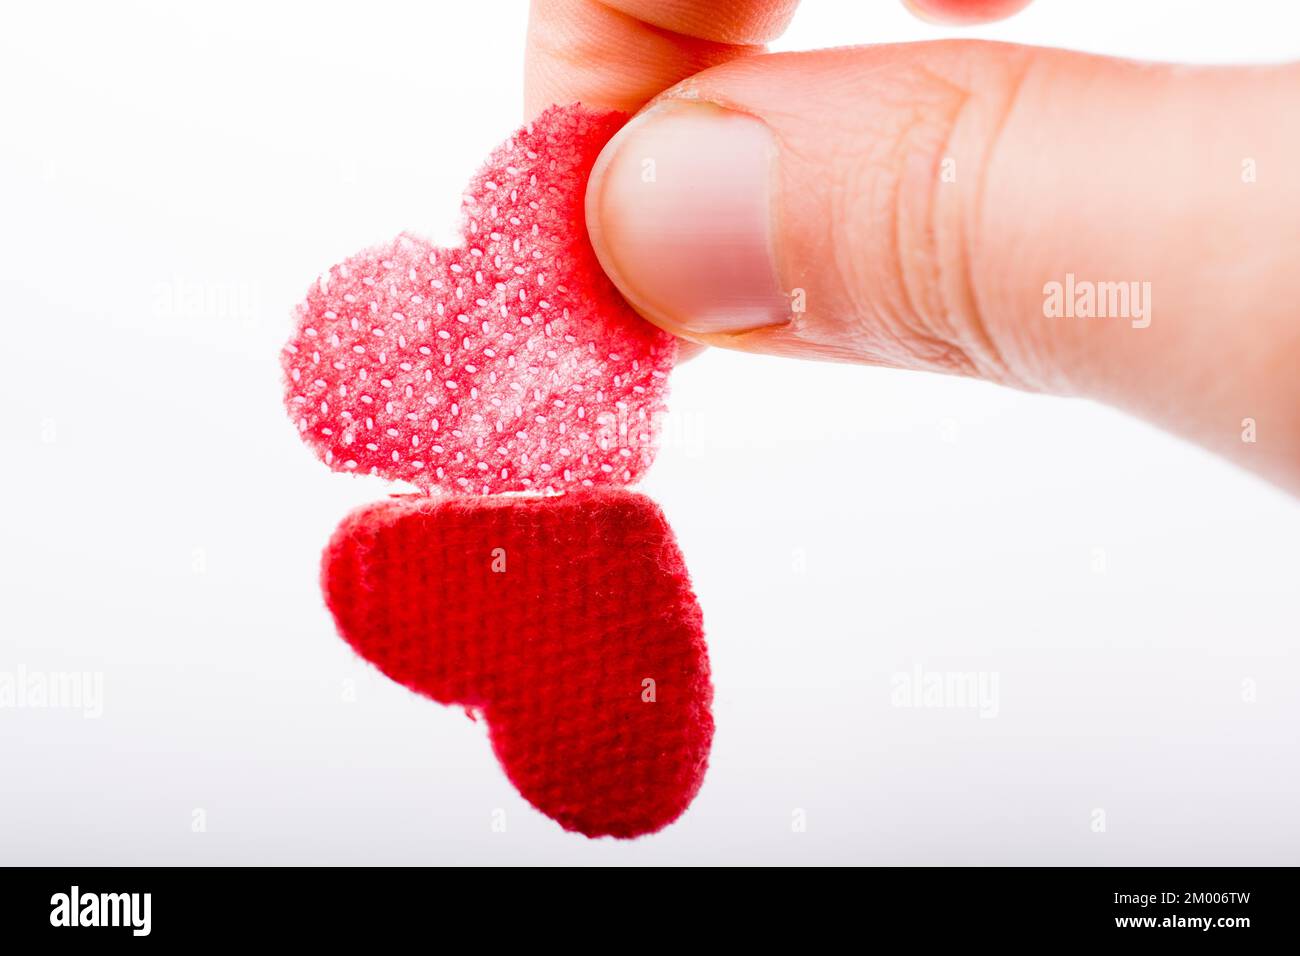 Herzförmige Objekt in der Hand auf Leinwand Stockfoto